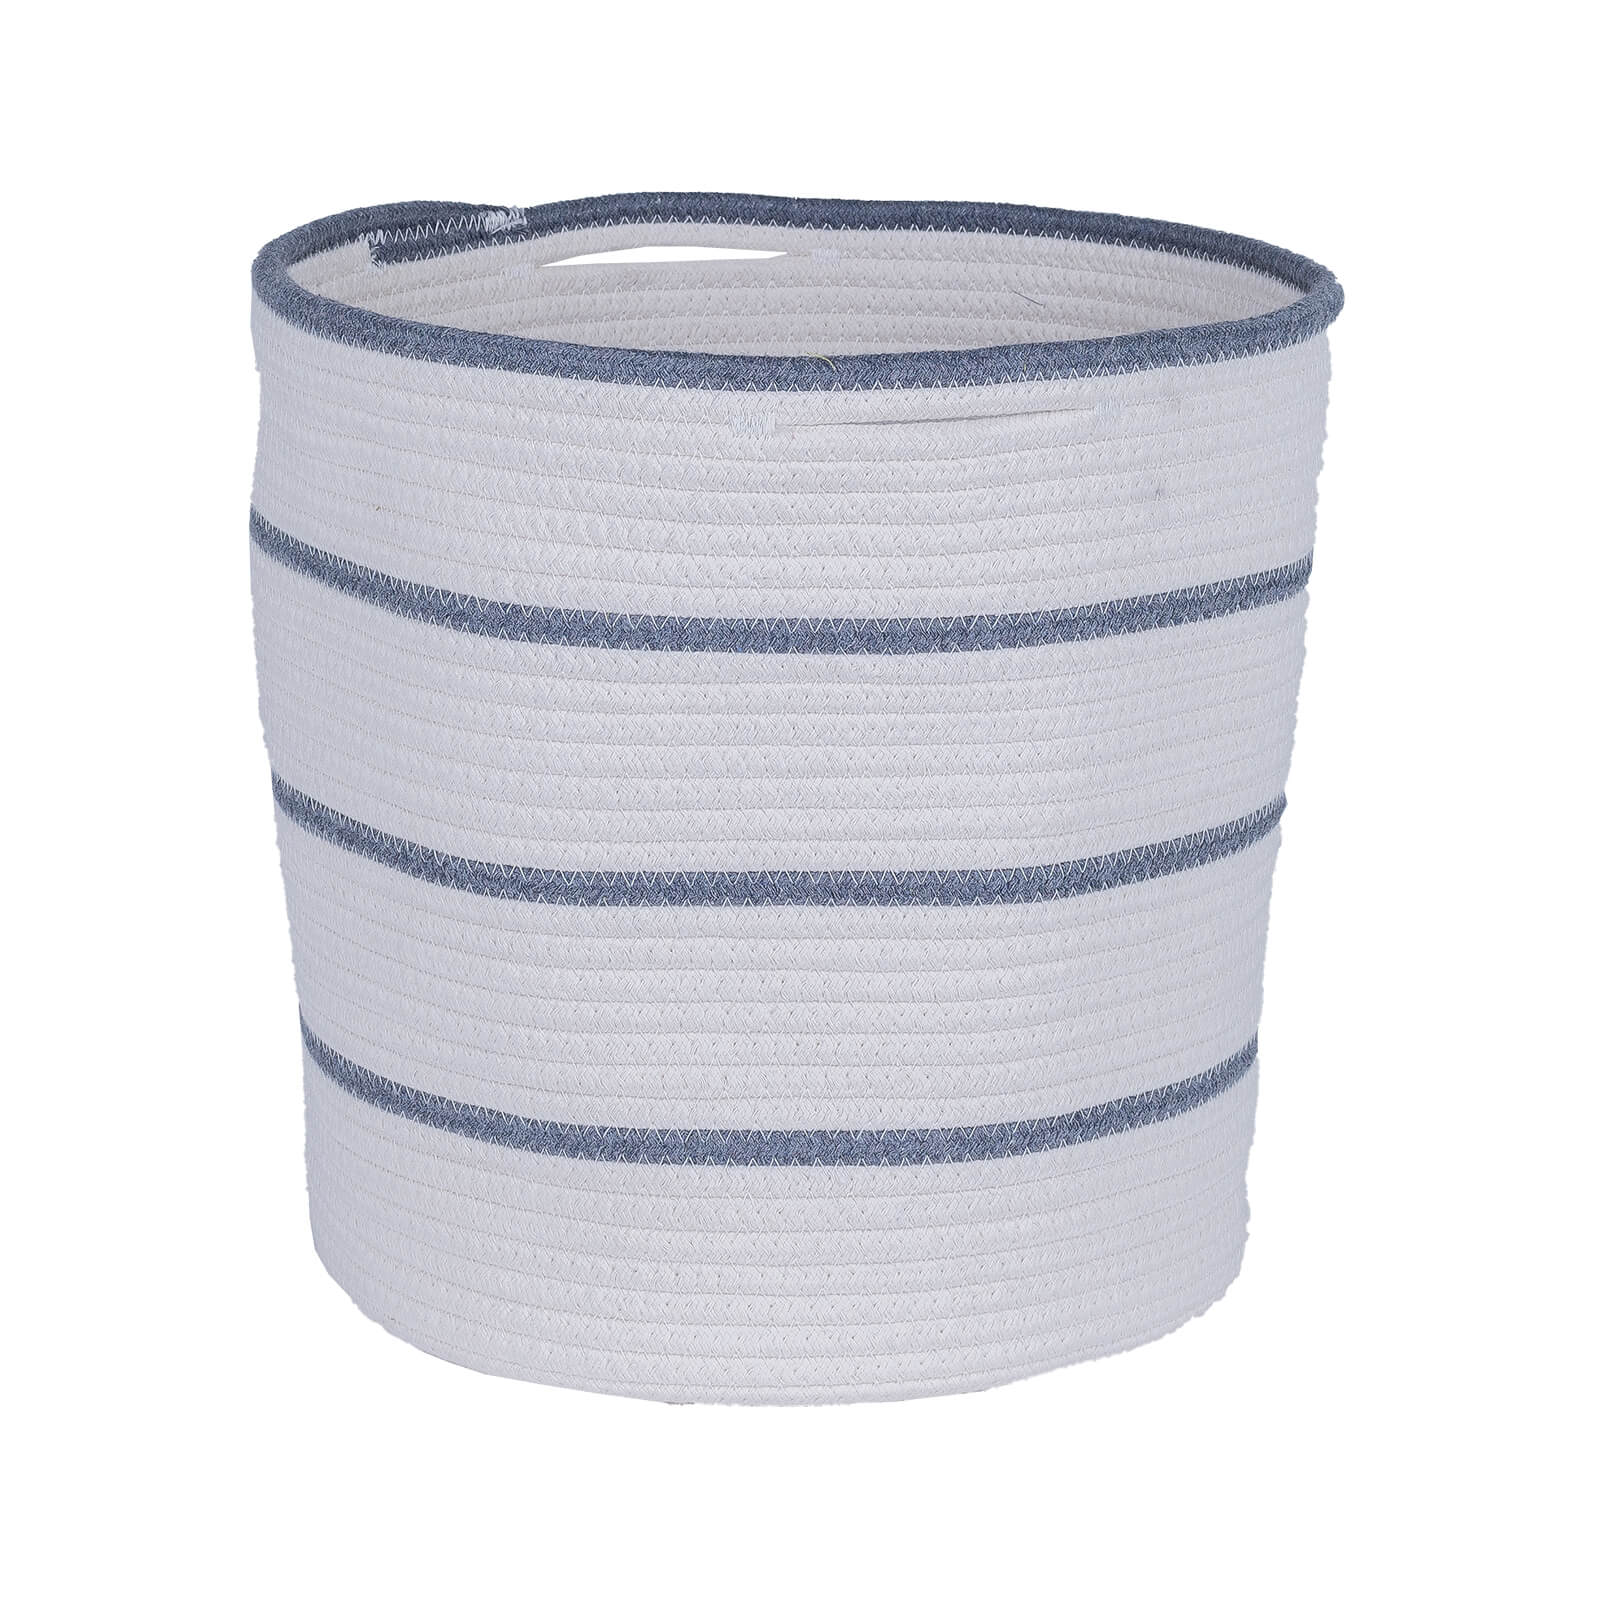 Cotton Rope Storage Hamper - Grey